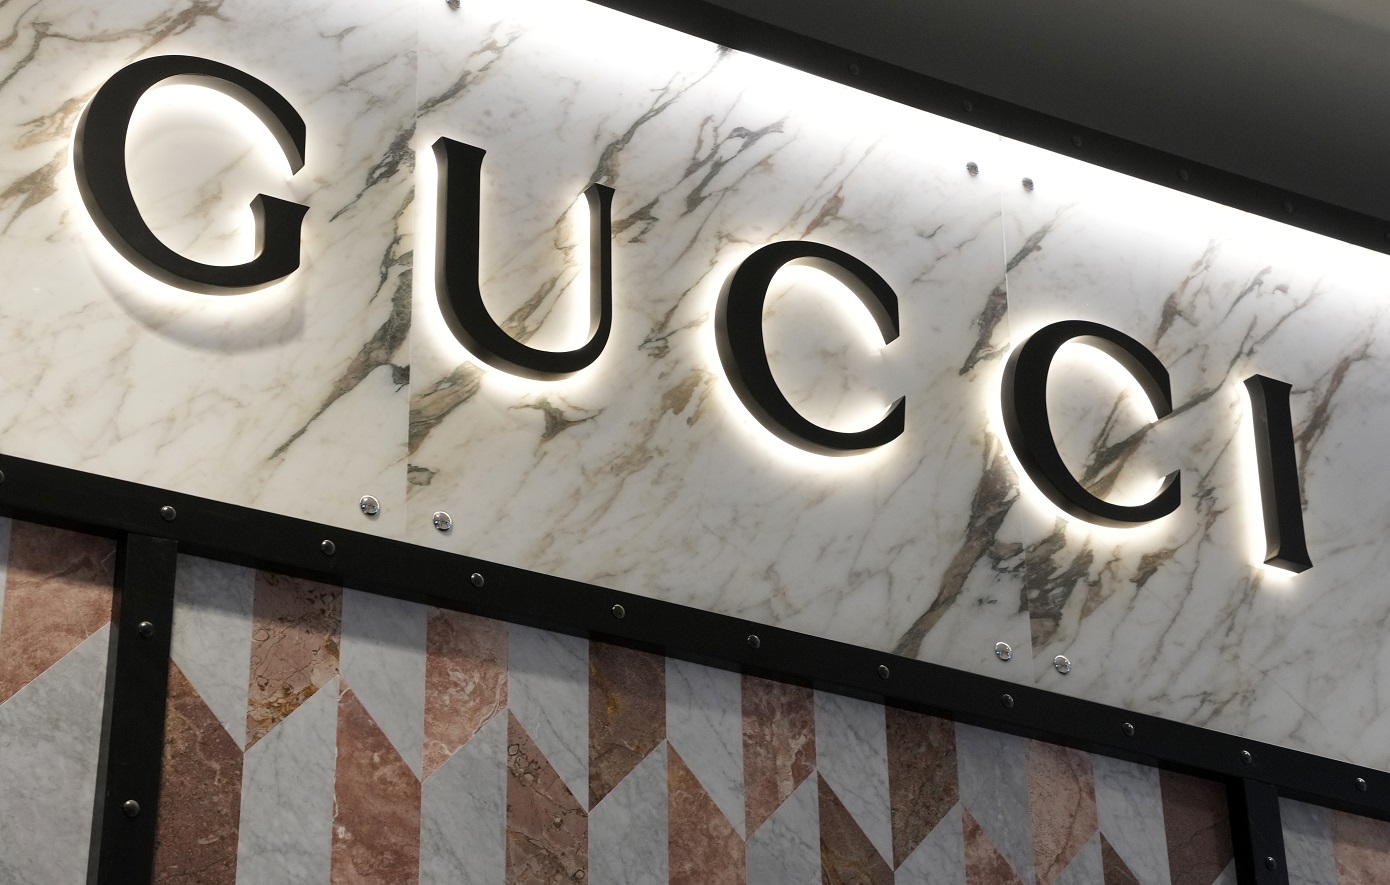 Καταρρέει η μετοχή της Gucci – Έχασε περισσότερα από 7 δισ. ευρώ ο ιταλικός κολοσσός